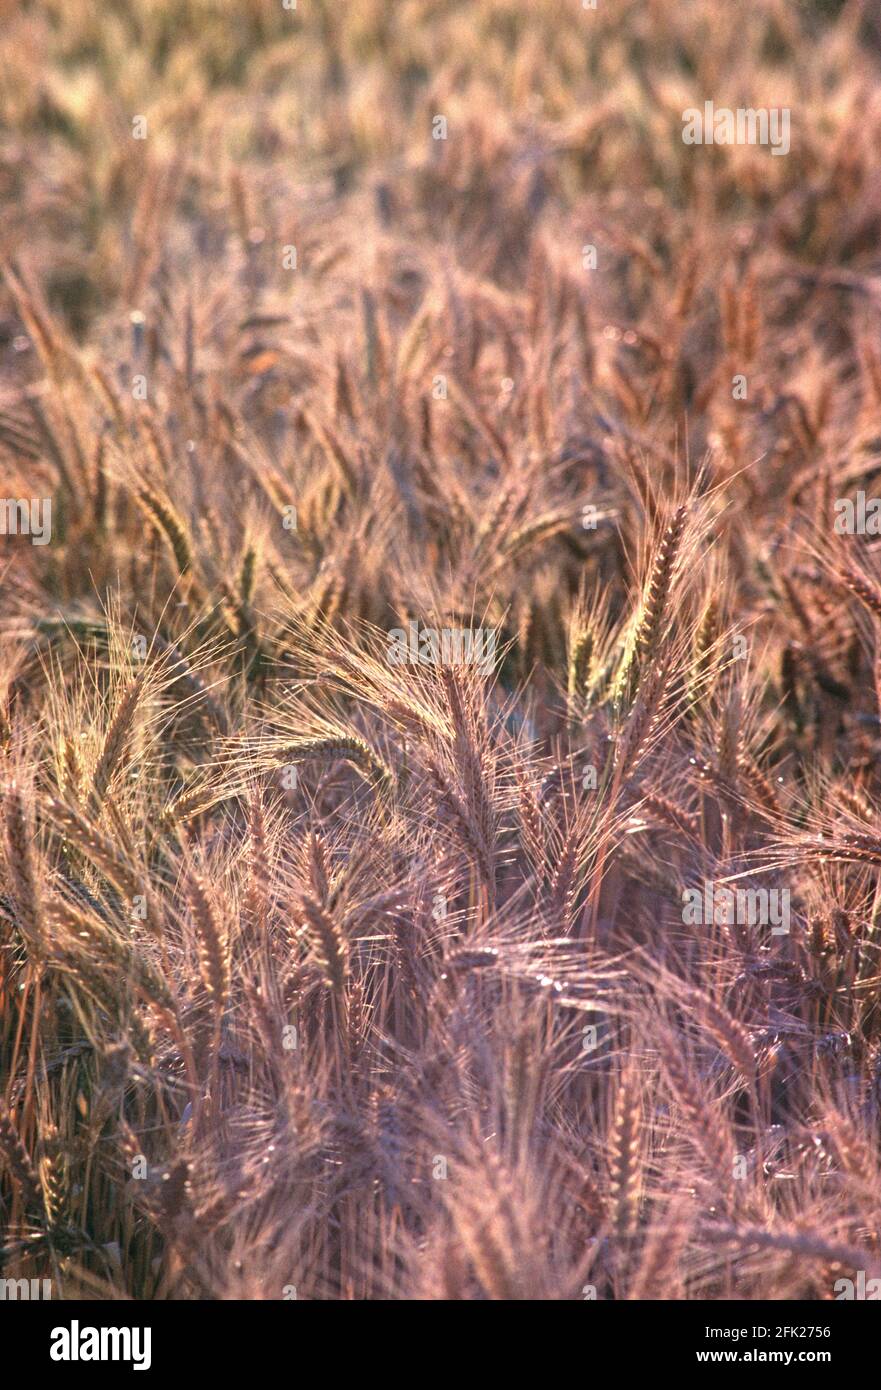 Australia. Agricultura. Campo de trigo. Primer plano del cultivo de trigo. Foto de stock